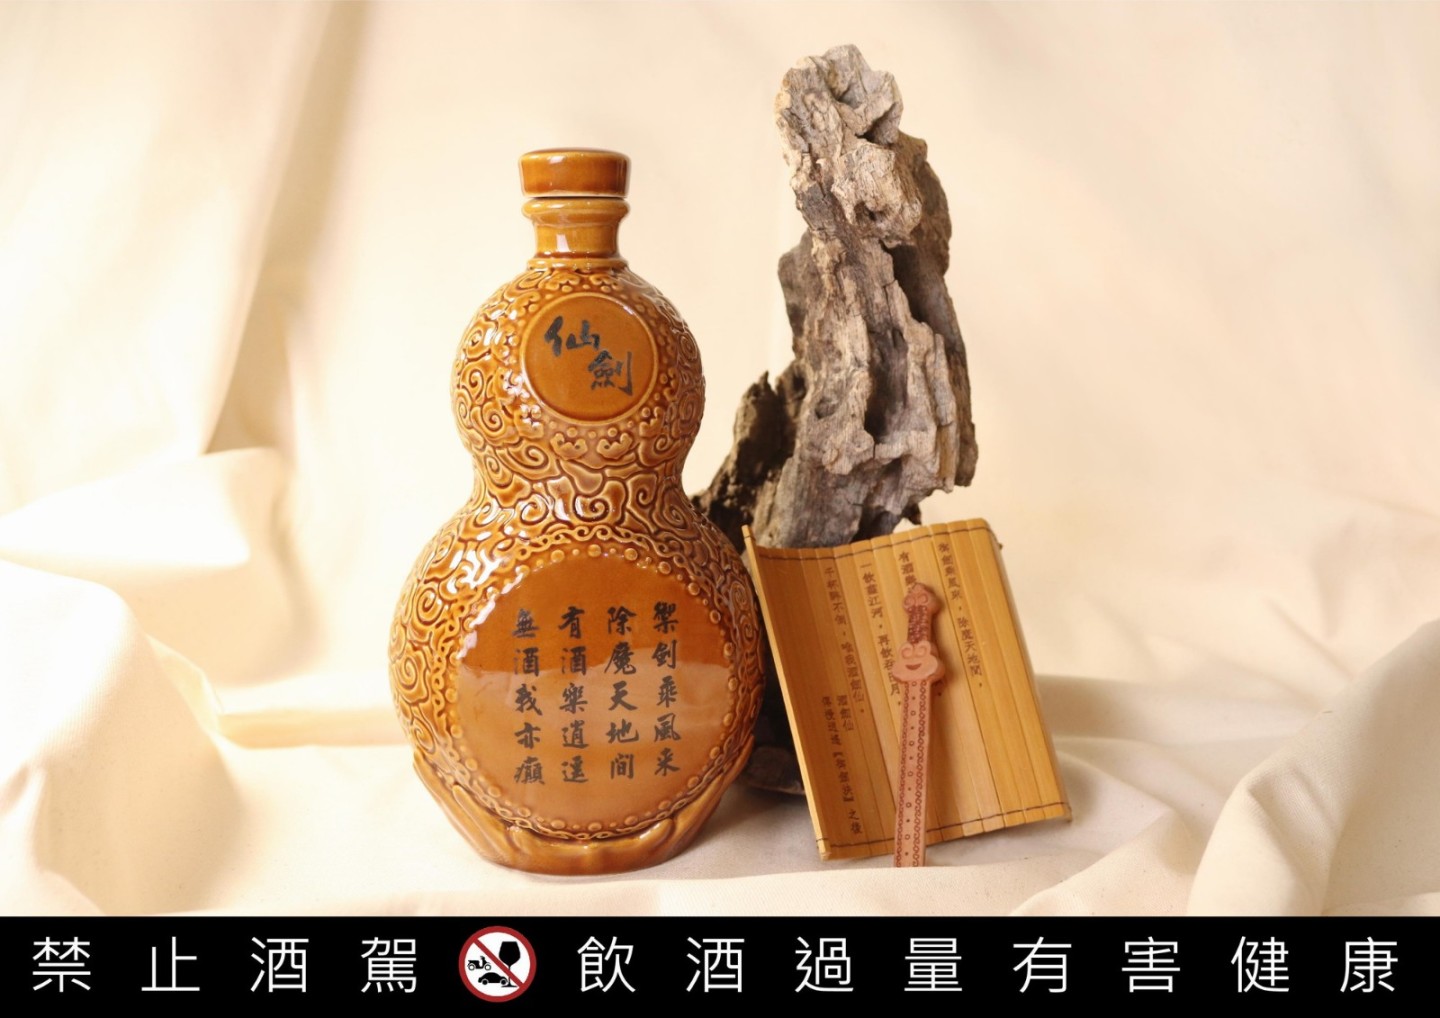 《仙剑奇侠传》推限量版"葫芦"造型纪念酒  8月31日开始预购-第7张